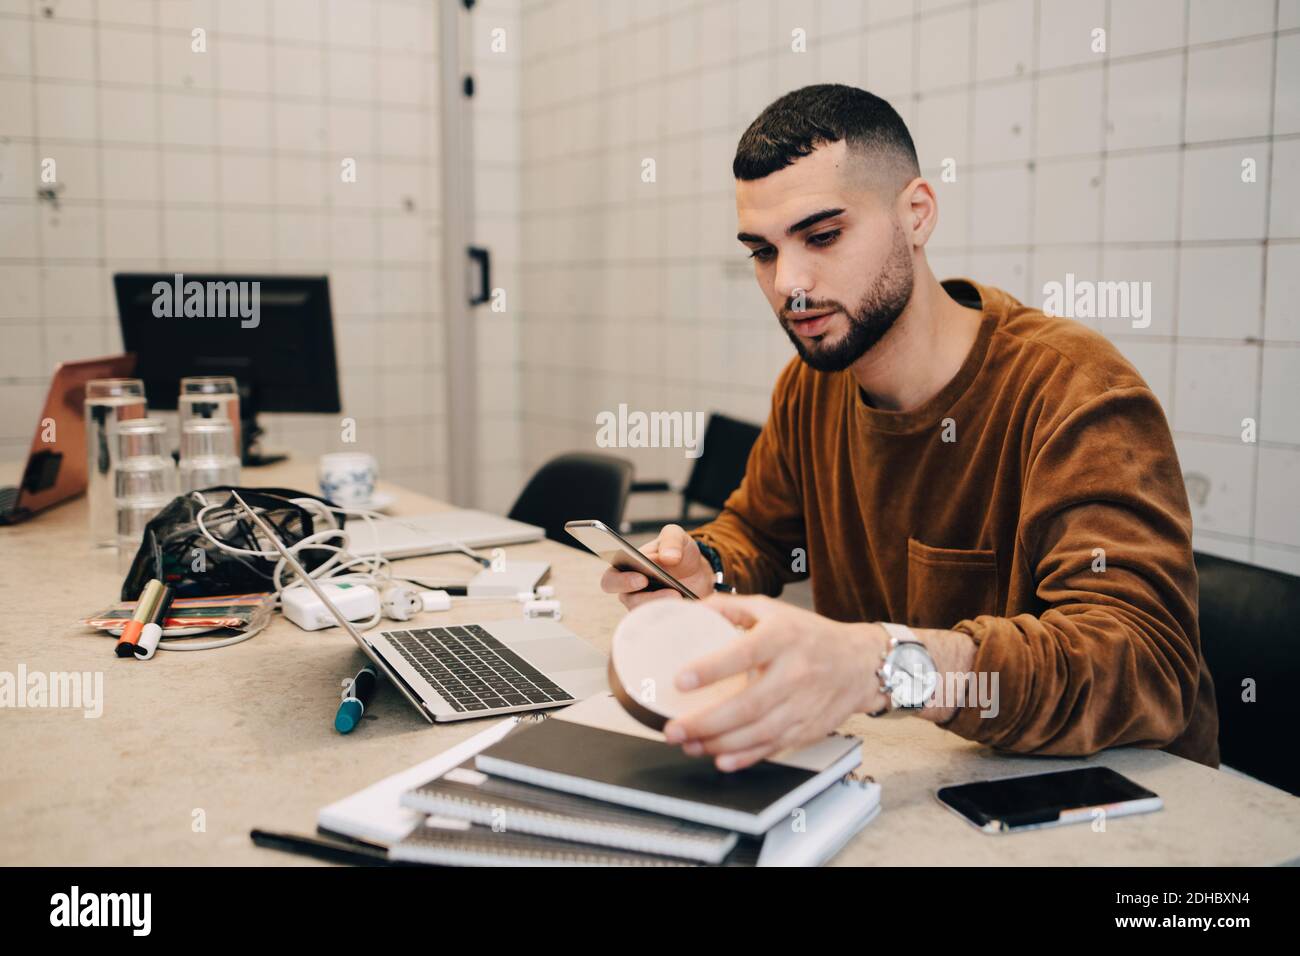 Junge männliche Hacker mit Smartphone, während die Ausrüstung zu halten Schreibtisch in kleinem Kreativbüro Stockfoto